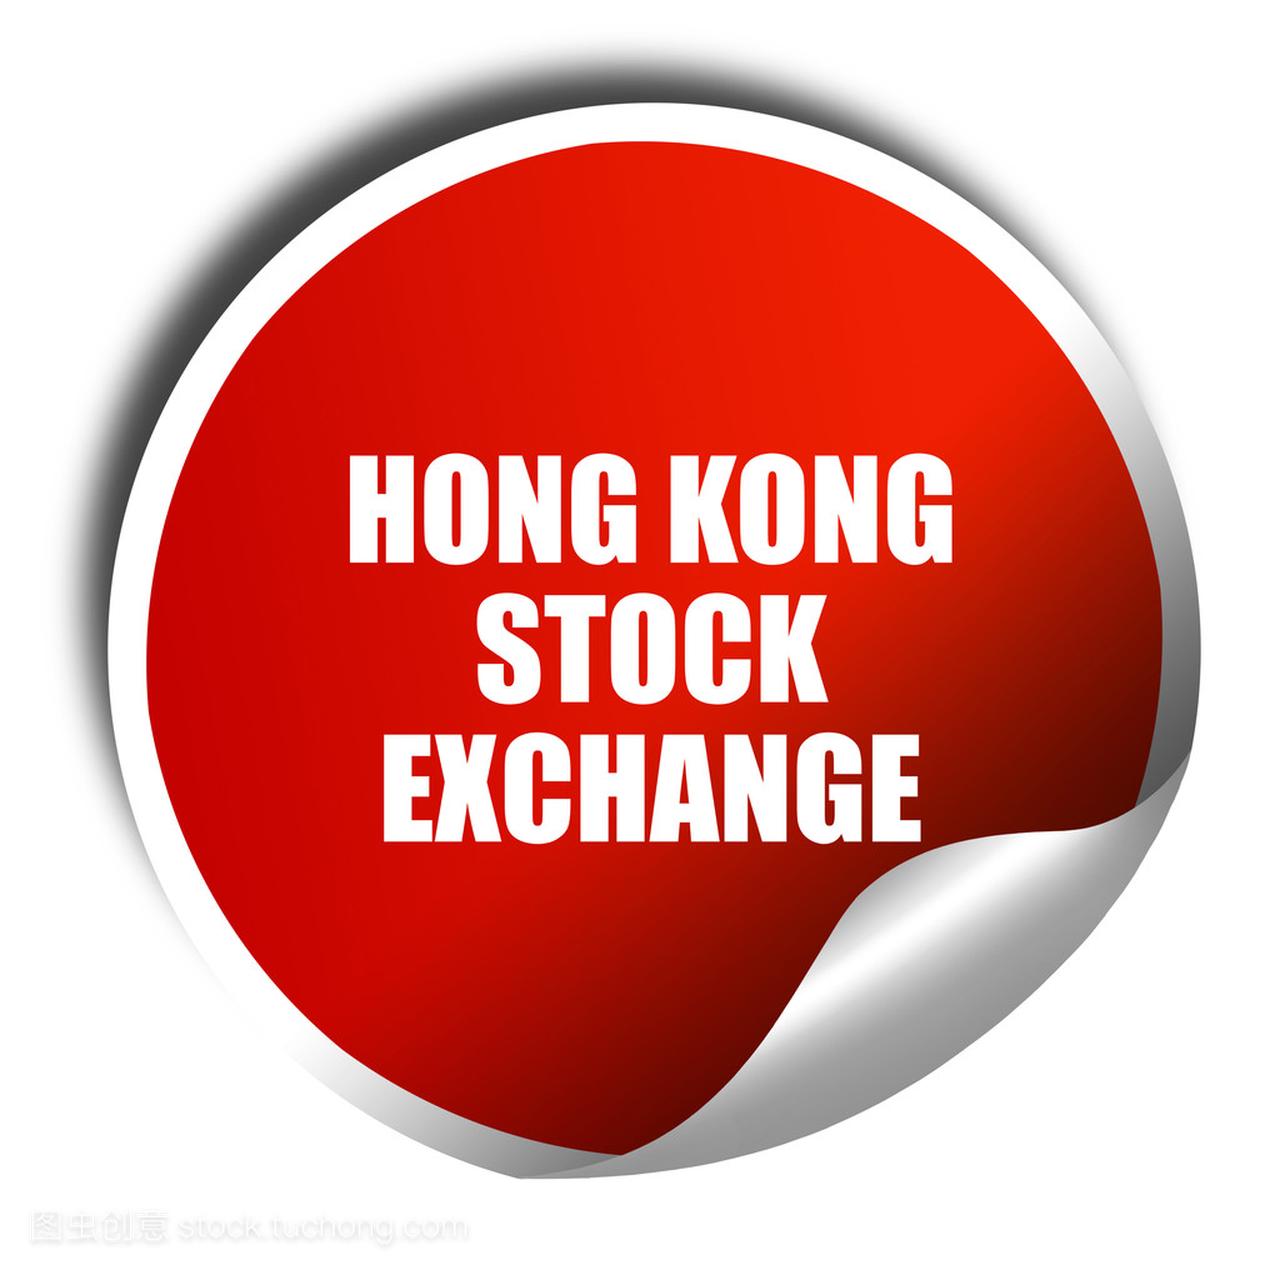 香港股票交易所,3d 渲染,红色贴纸,与白色的 t